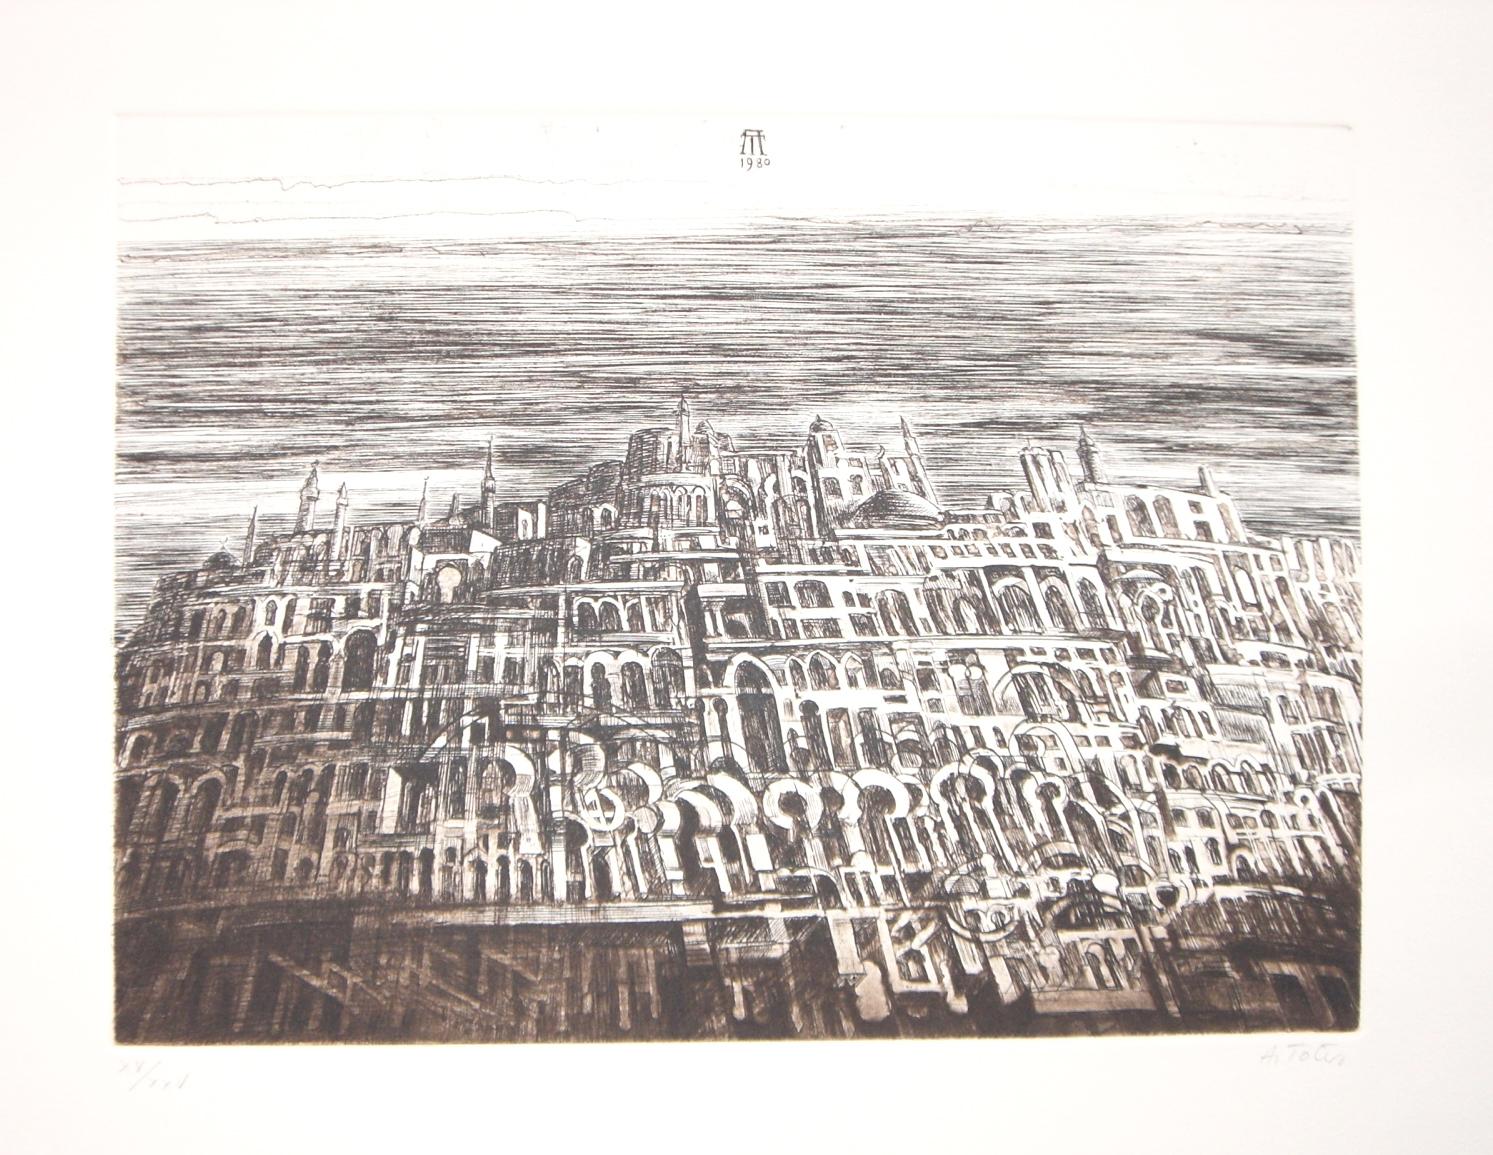 Antonio De Totero Abstract Print - Arab City - Original Etching by Antonio de Totero - 1980 ca.